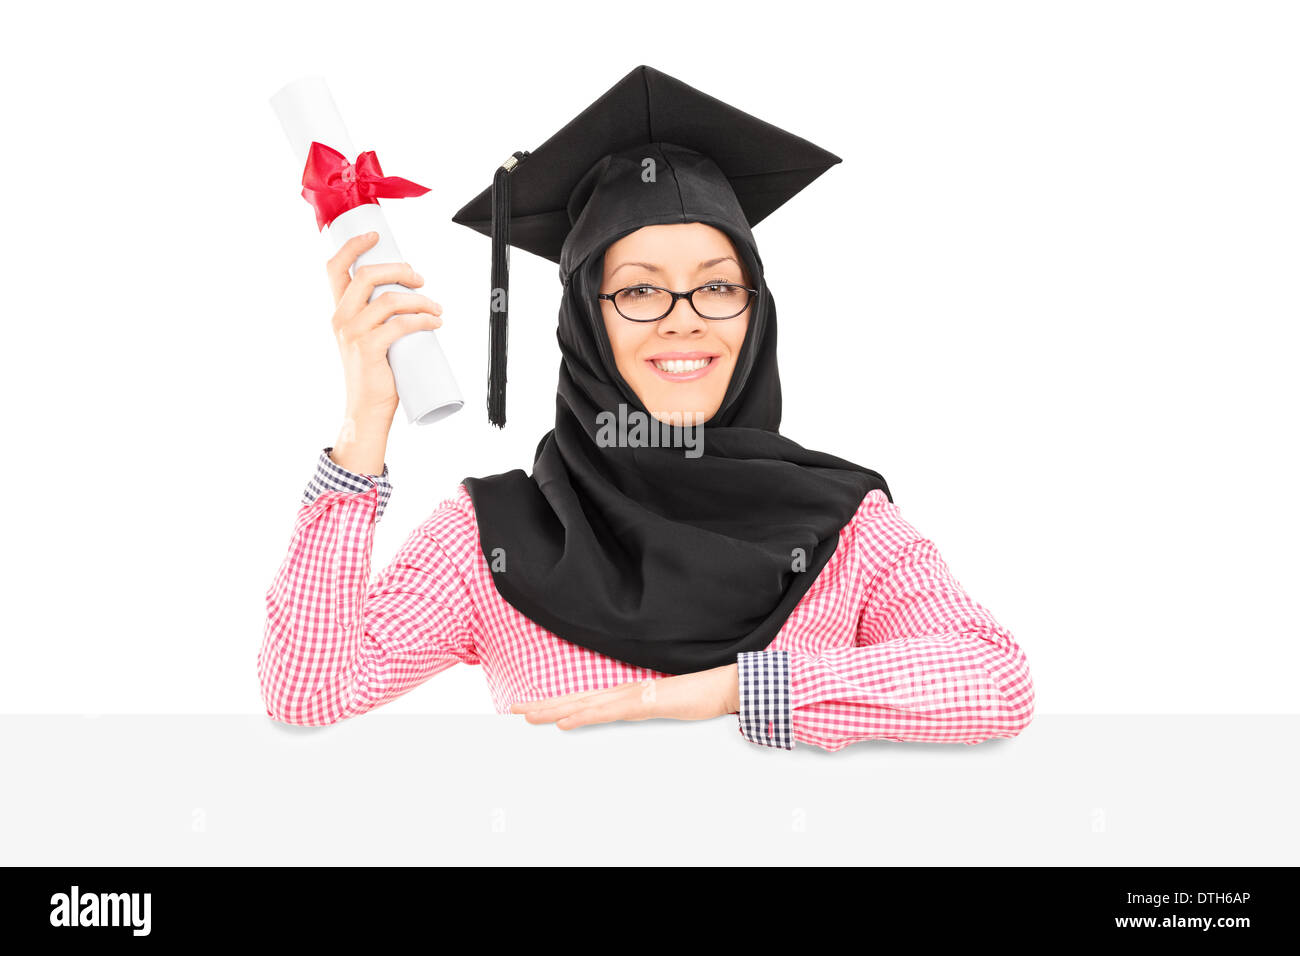 Femmina studente islamico con mortarboard e velo holding diploma dietro il pannello vuoto Foto Stock